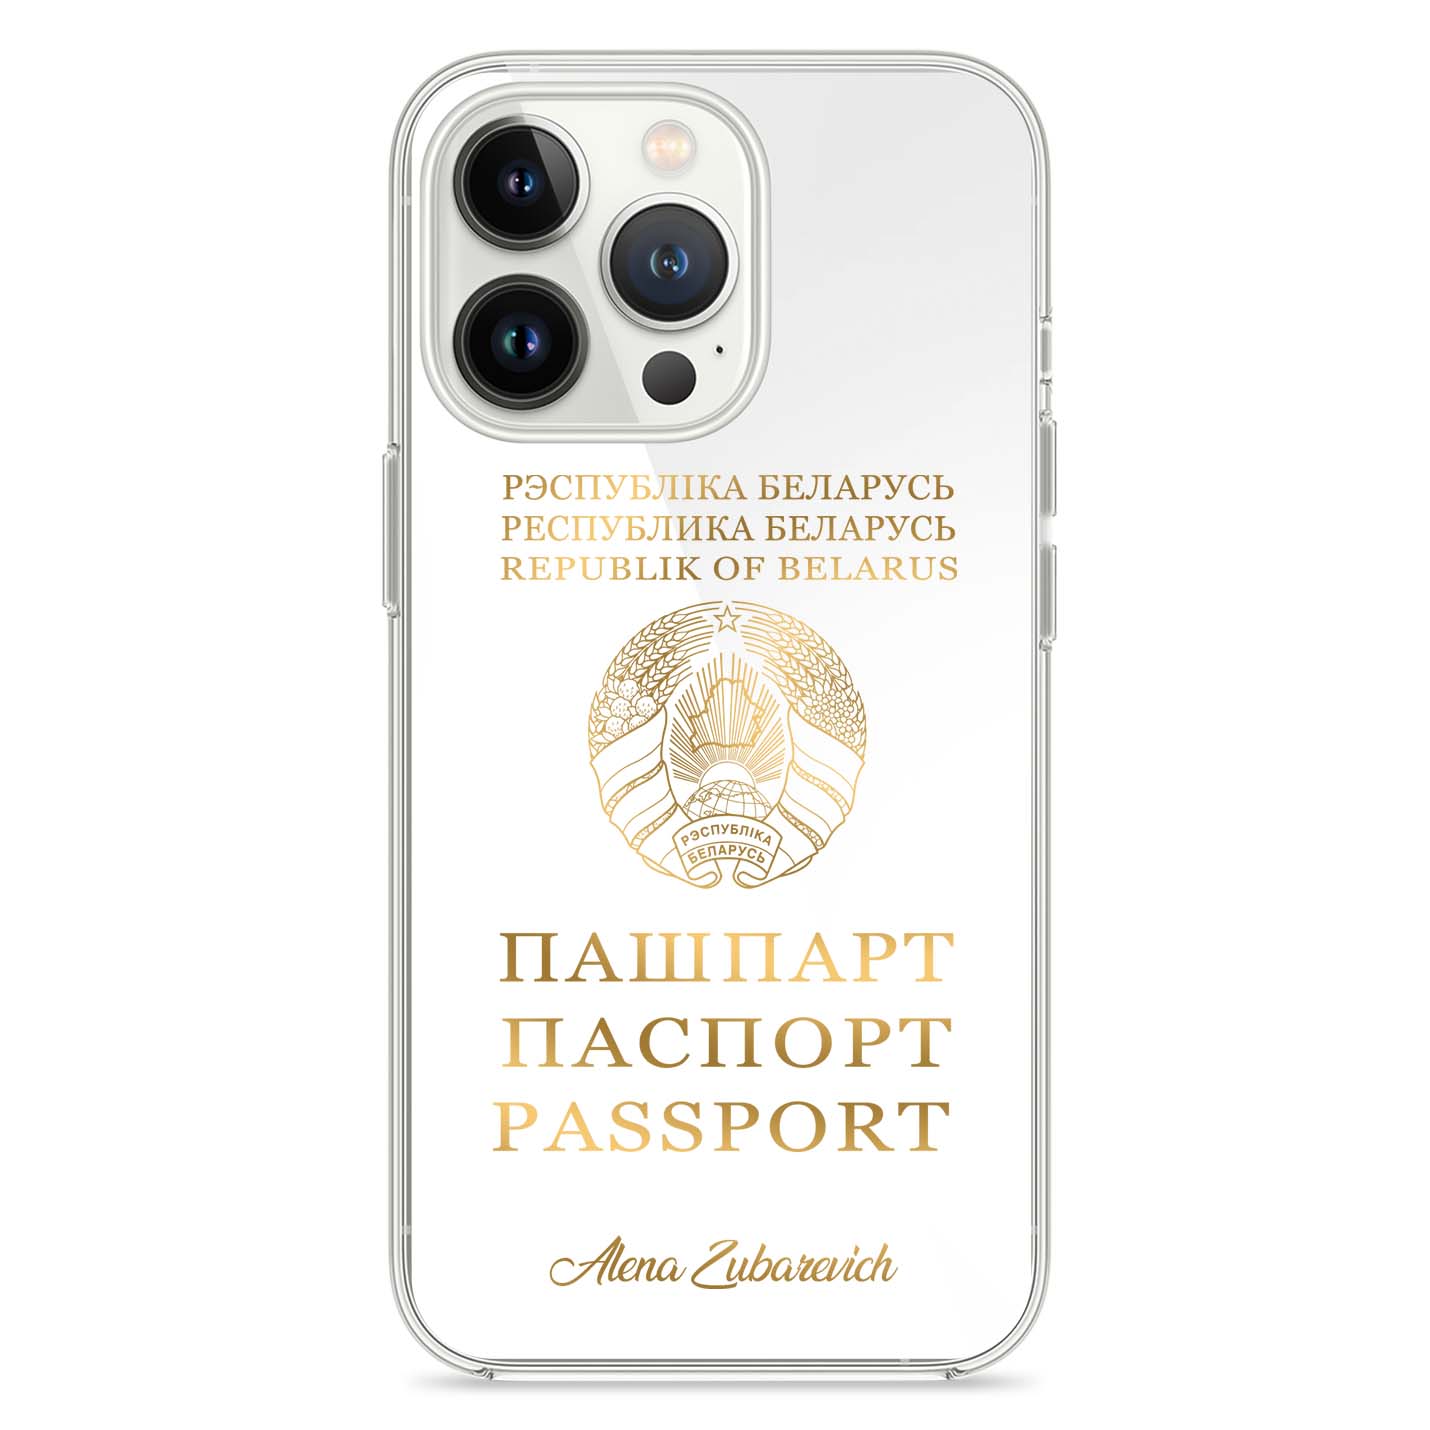 Handyhüllen mit Reisepass - Belarus - 1instaphone